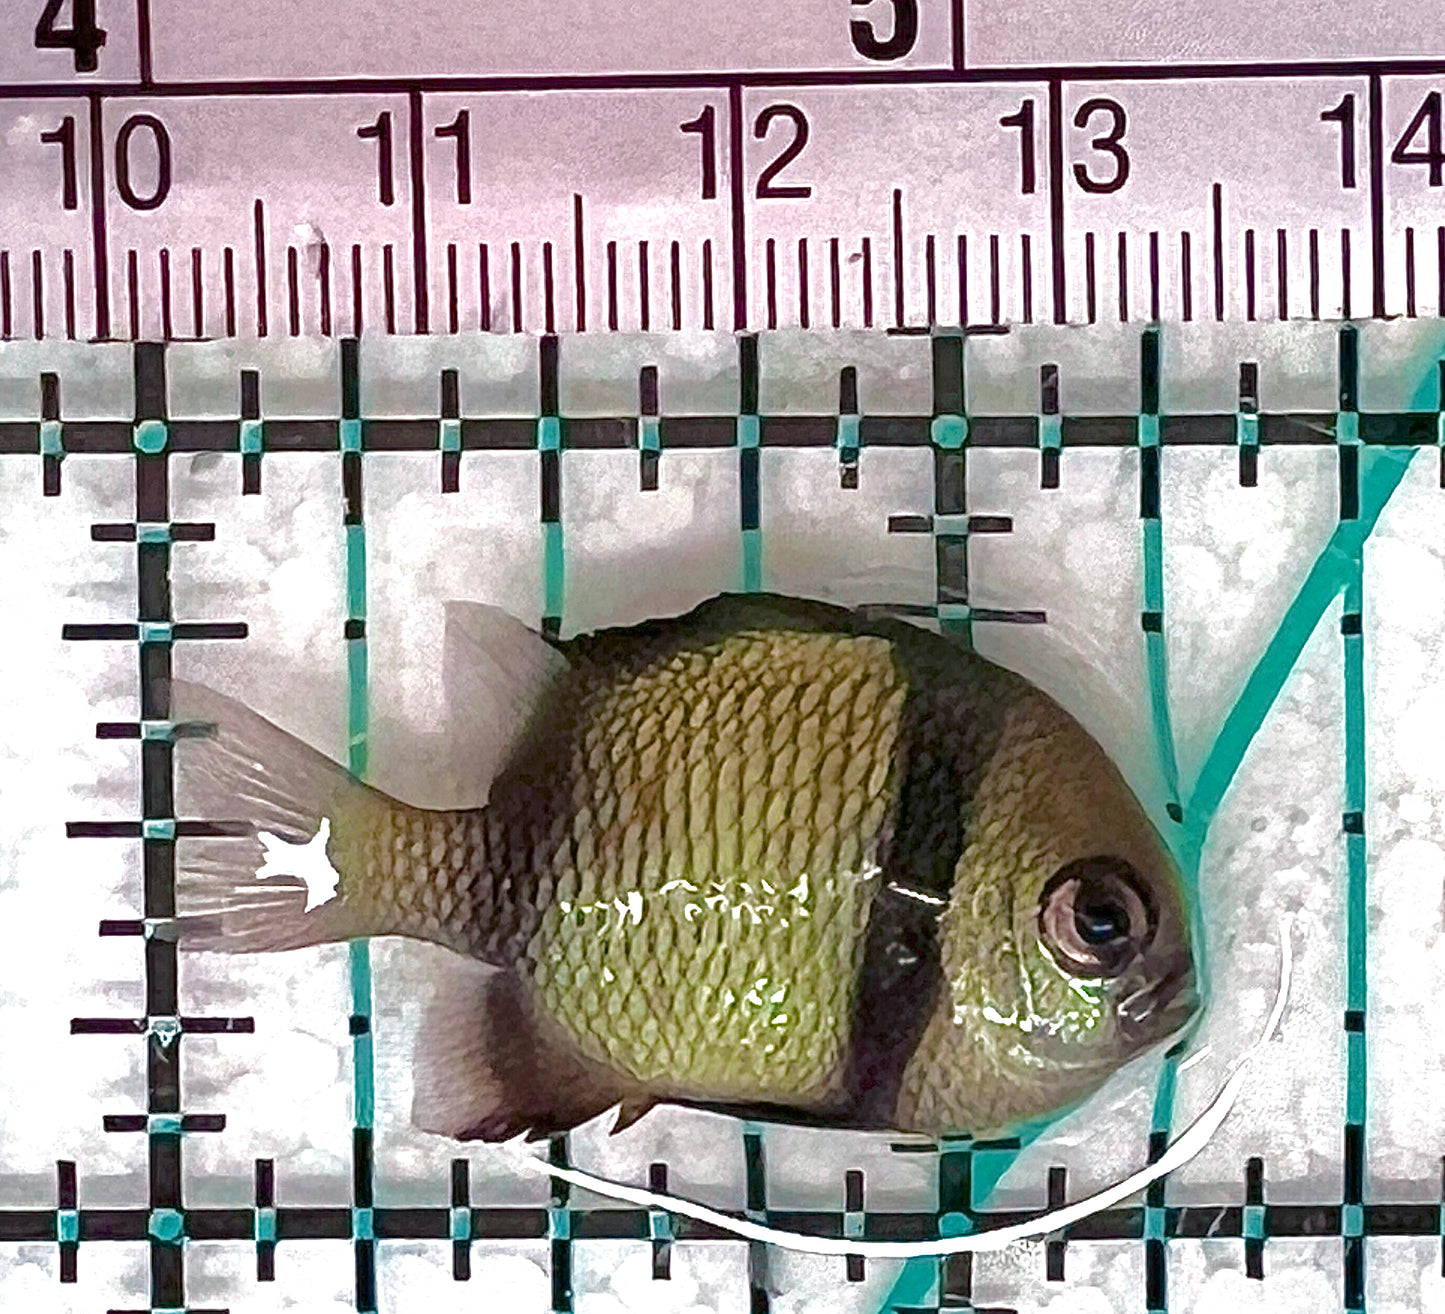 Two Stripe Damselfish TSD050601 WYSIWYG Size: S 1.25" approx